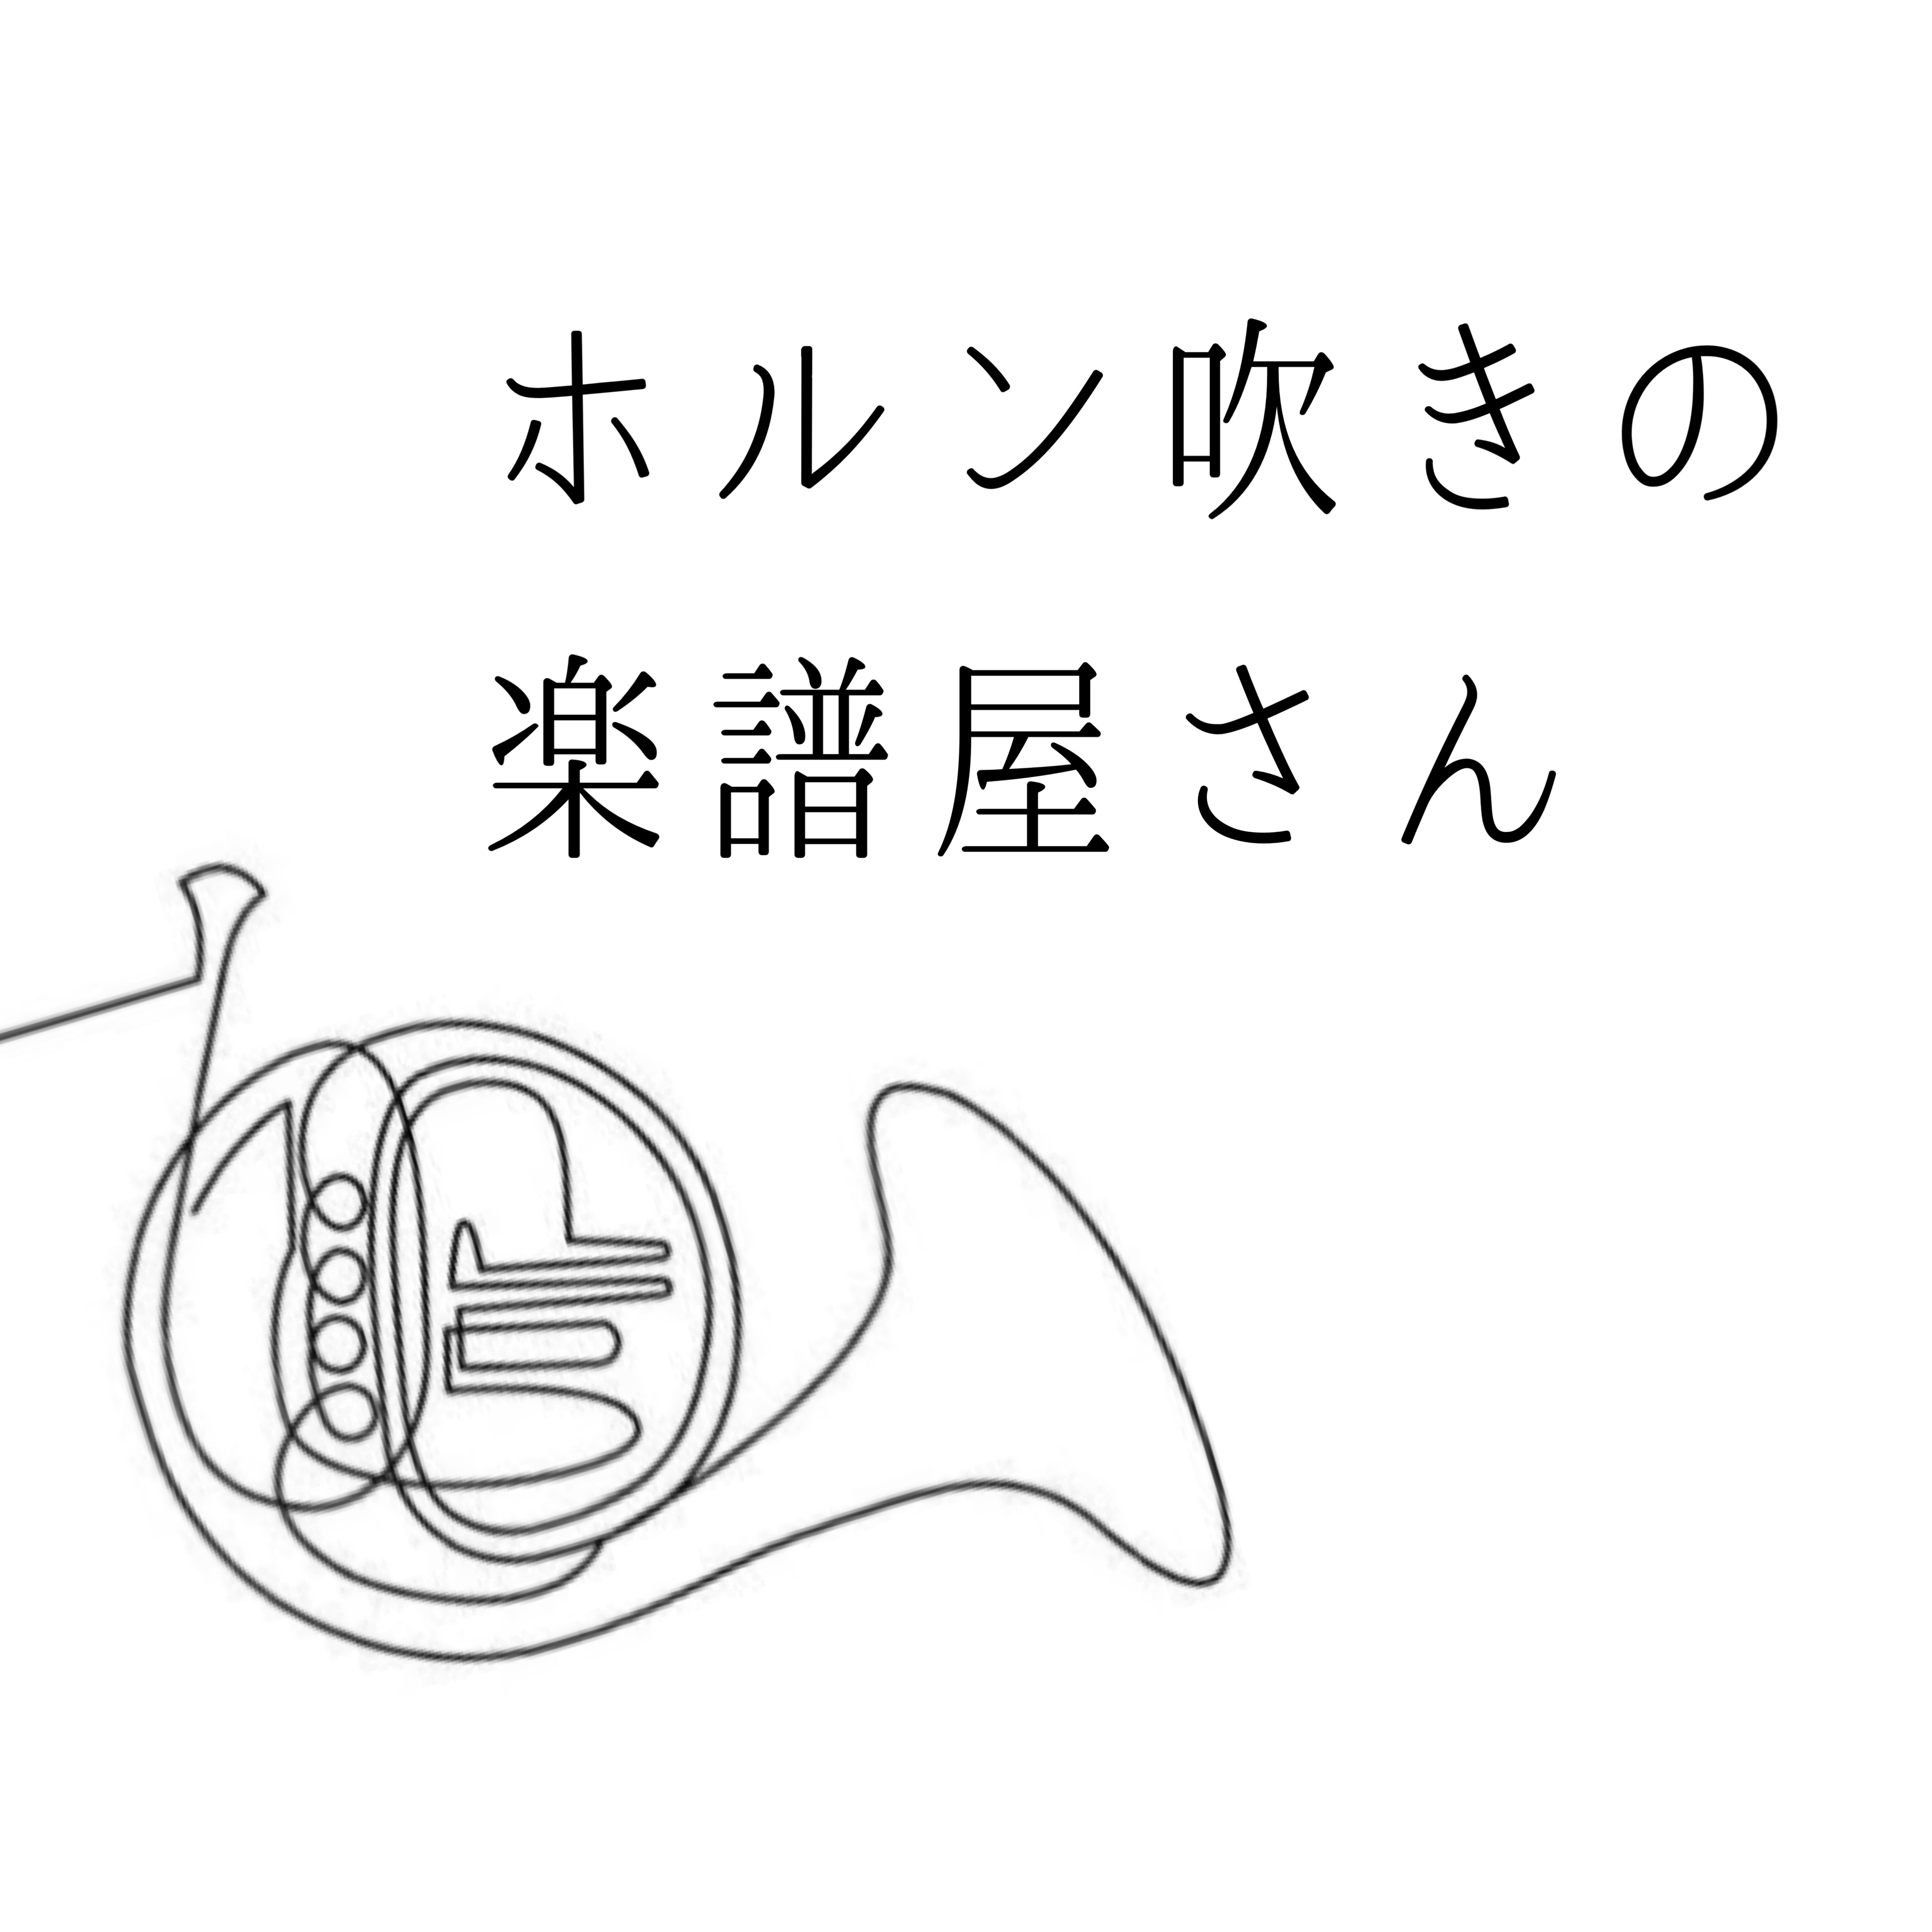 Furusato for Horn quartet